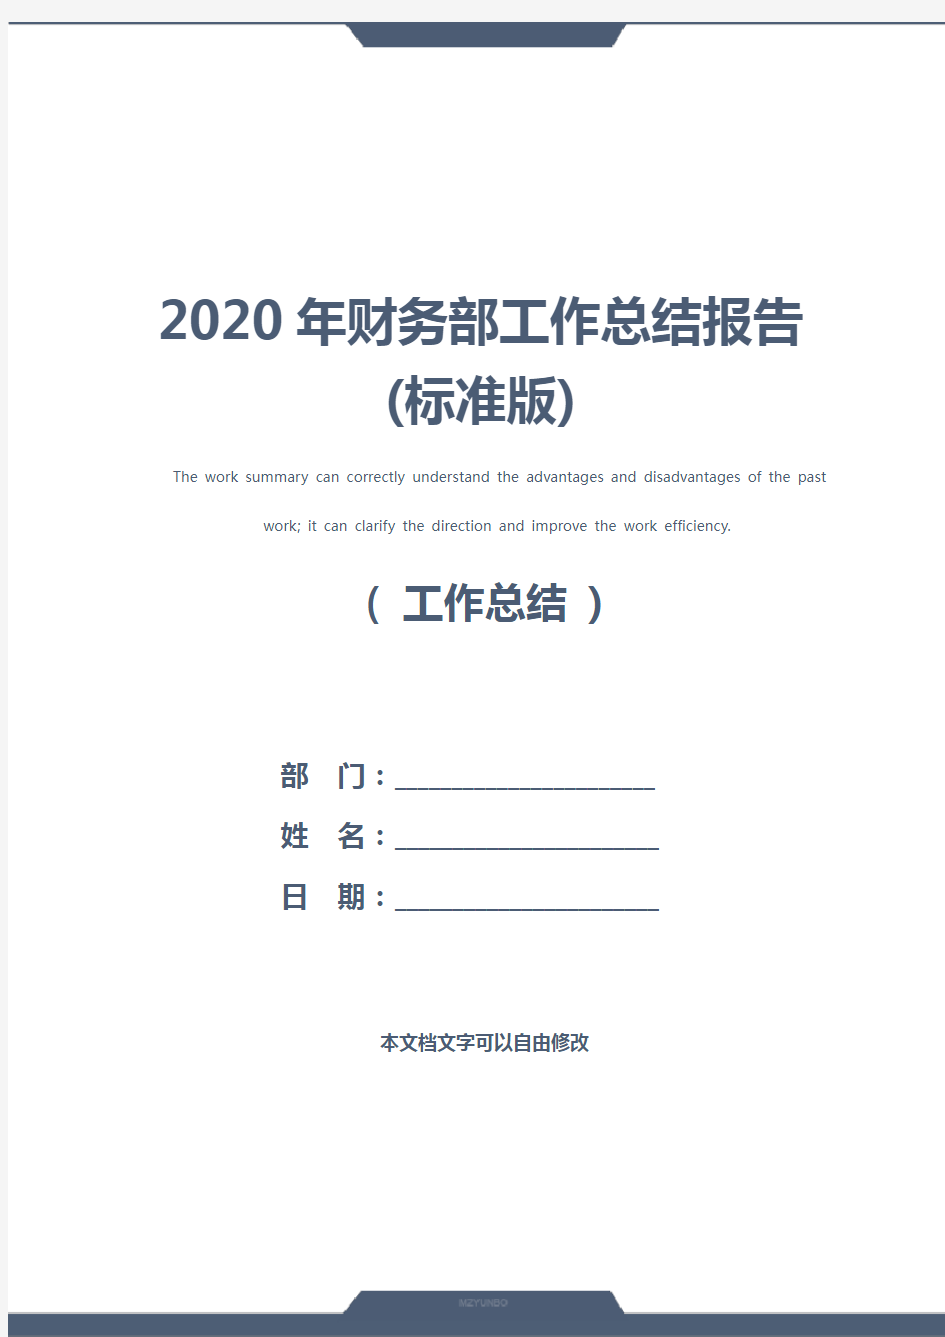 2020年财务部工作总结报告(标准版)